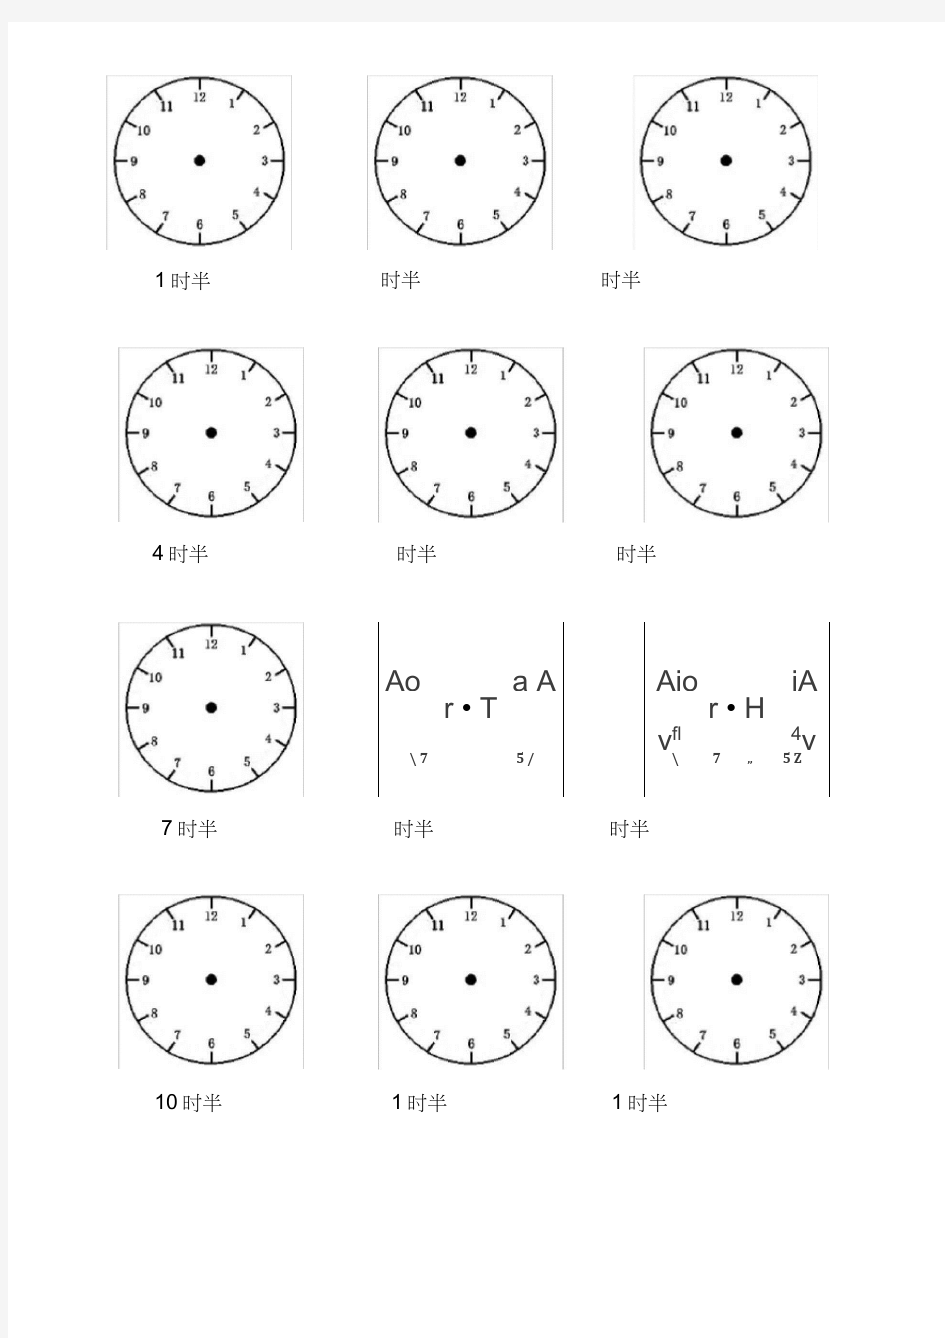 一年级数学画整时半时练习空白钟表图32210